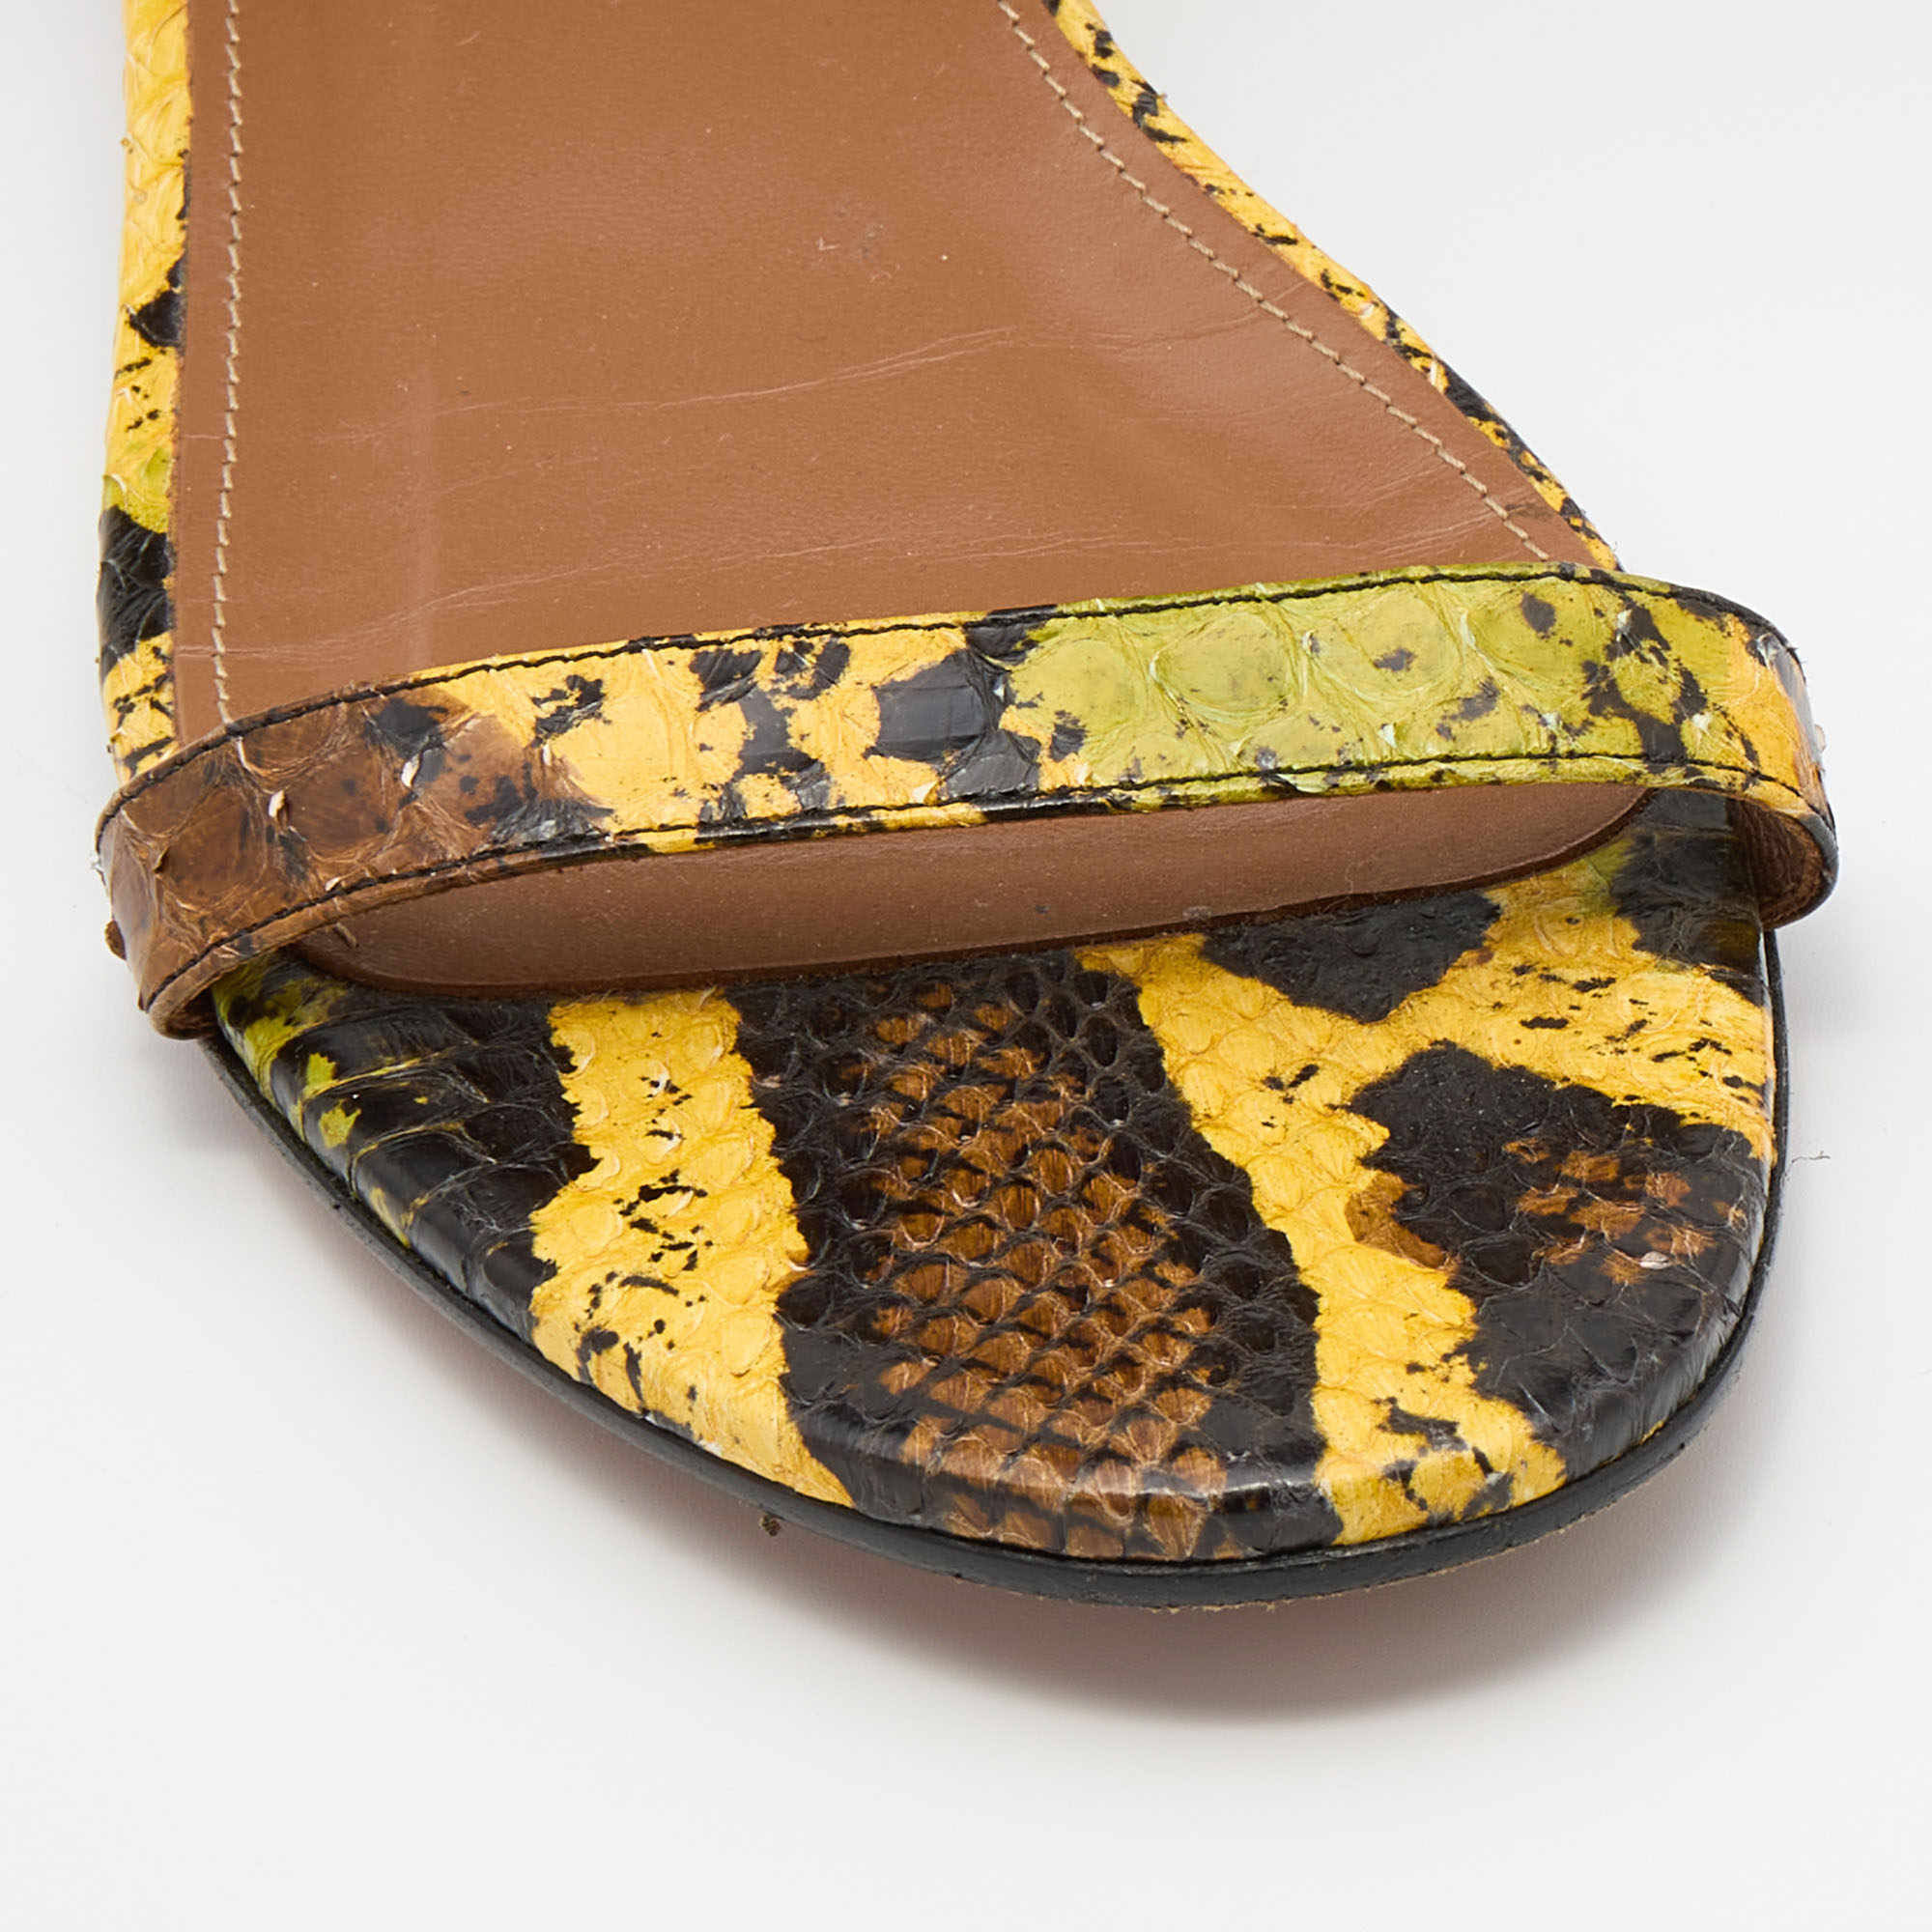 Aquazzura Multicolor Python Ankle Strap Flat Sandals Size 38